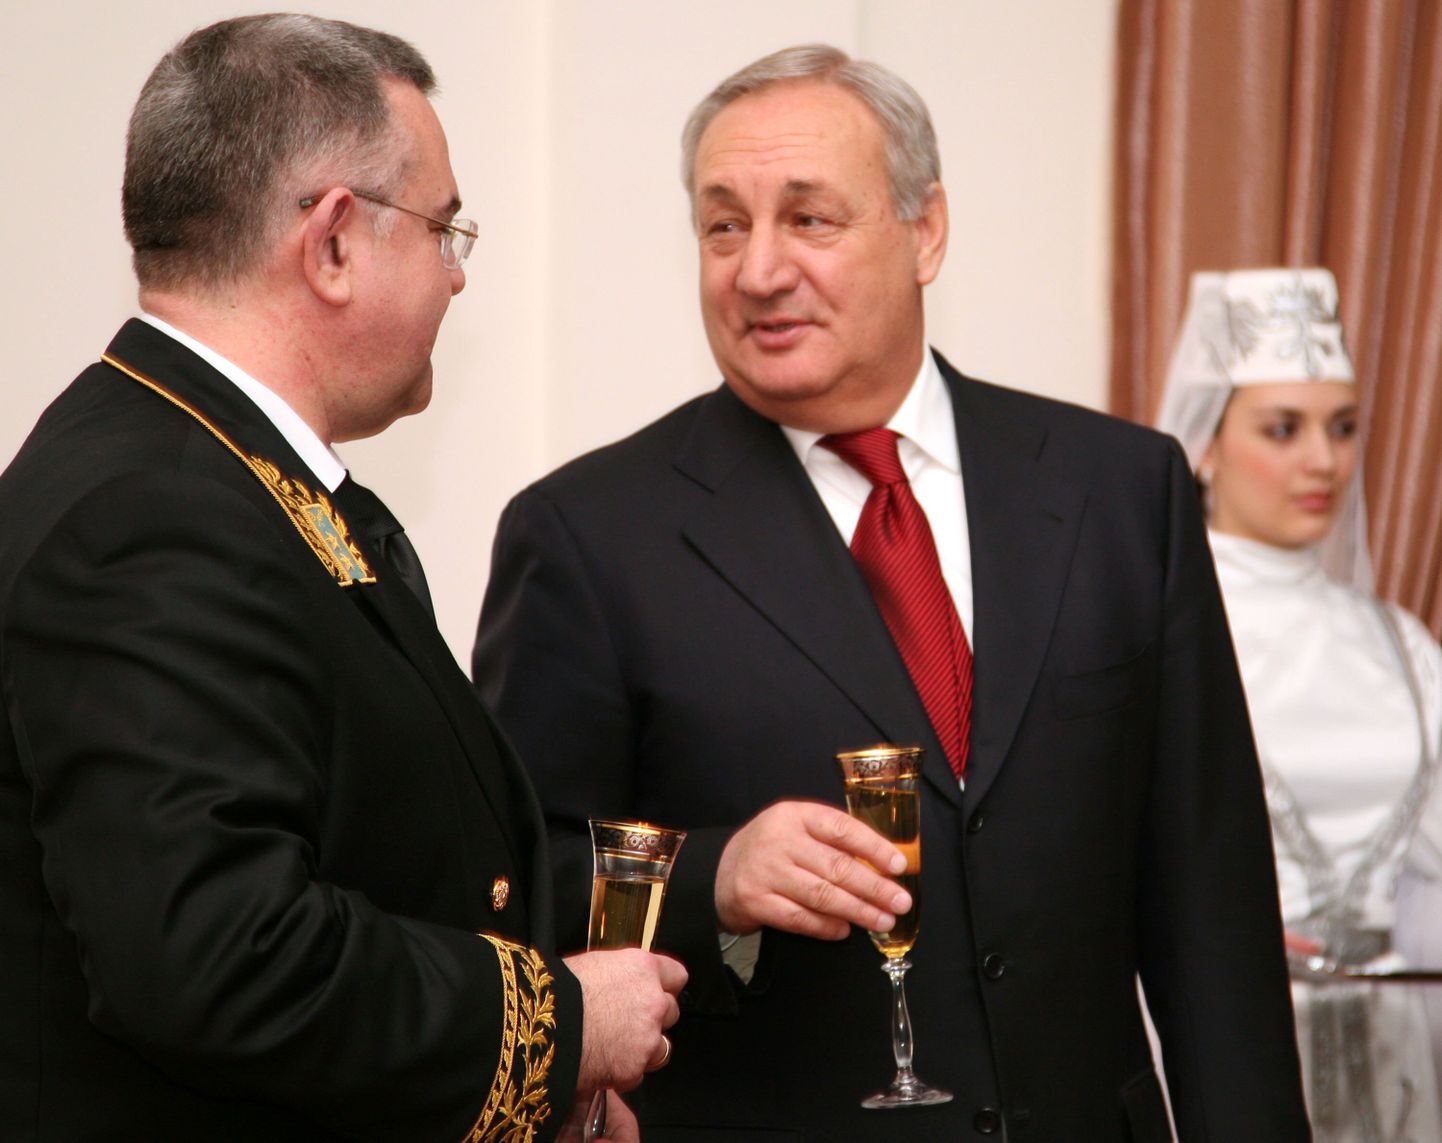 Vene suursaadikuba separatistlikku Abhaasiasse lähedatud Semjon Grigorjev löömas šampanjaklaase kokku kohaliku liidri Sergei Bagapšiga.